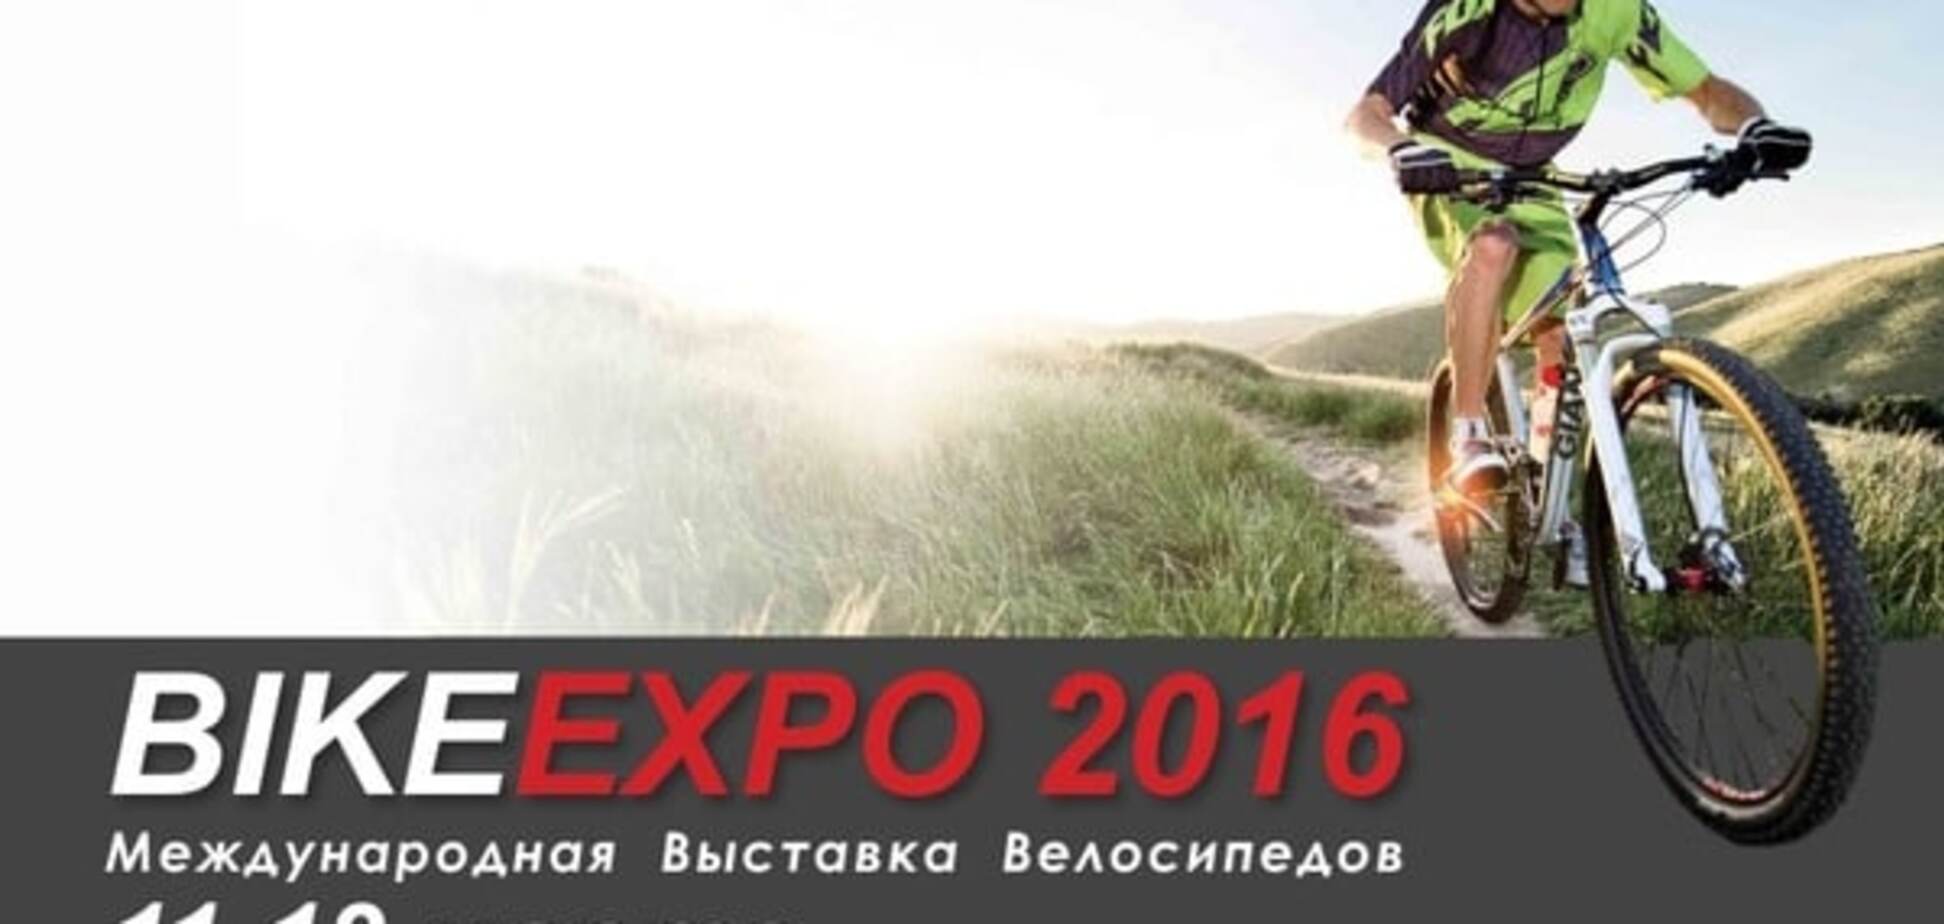 11-13 марта состоится Международная выставка велосипедов